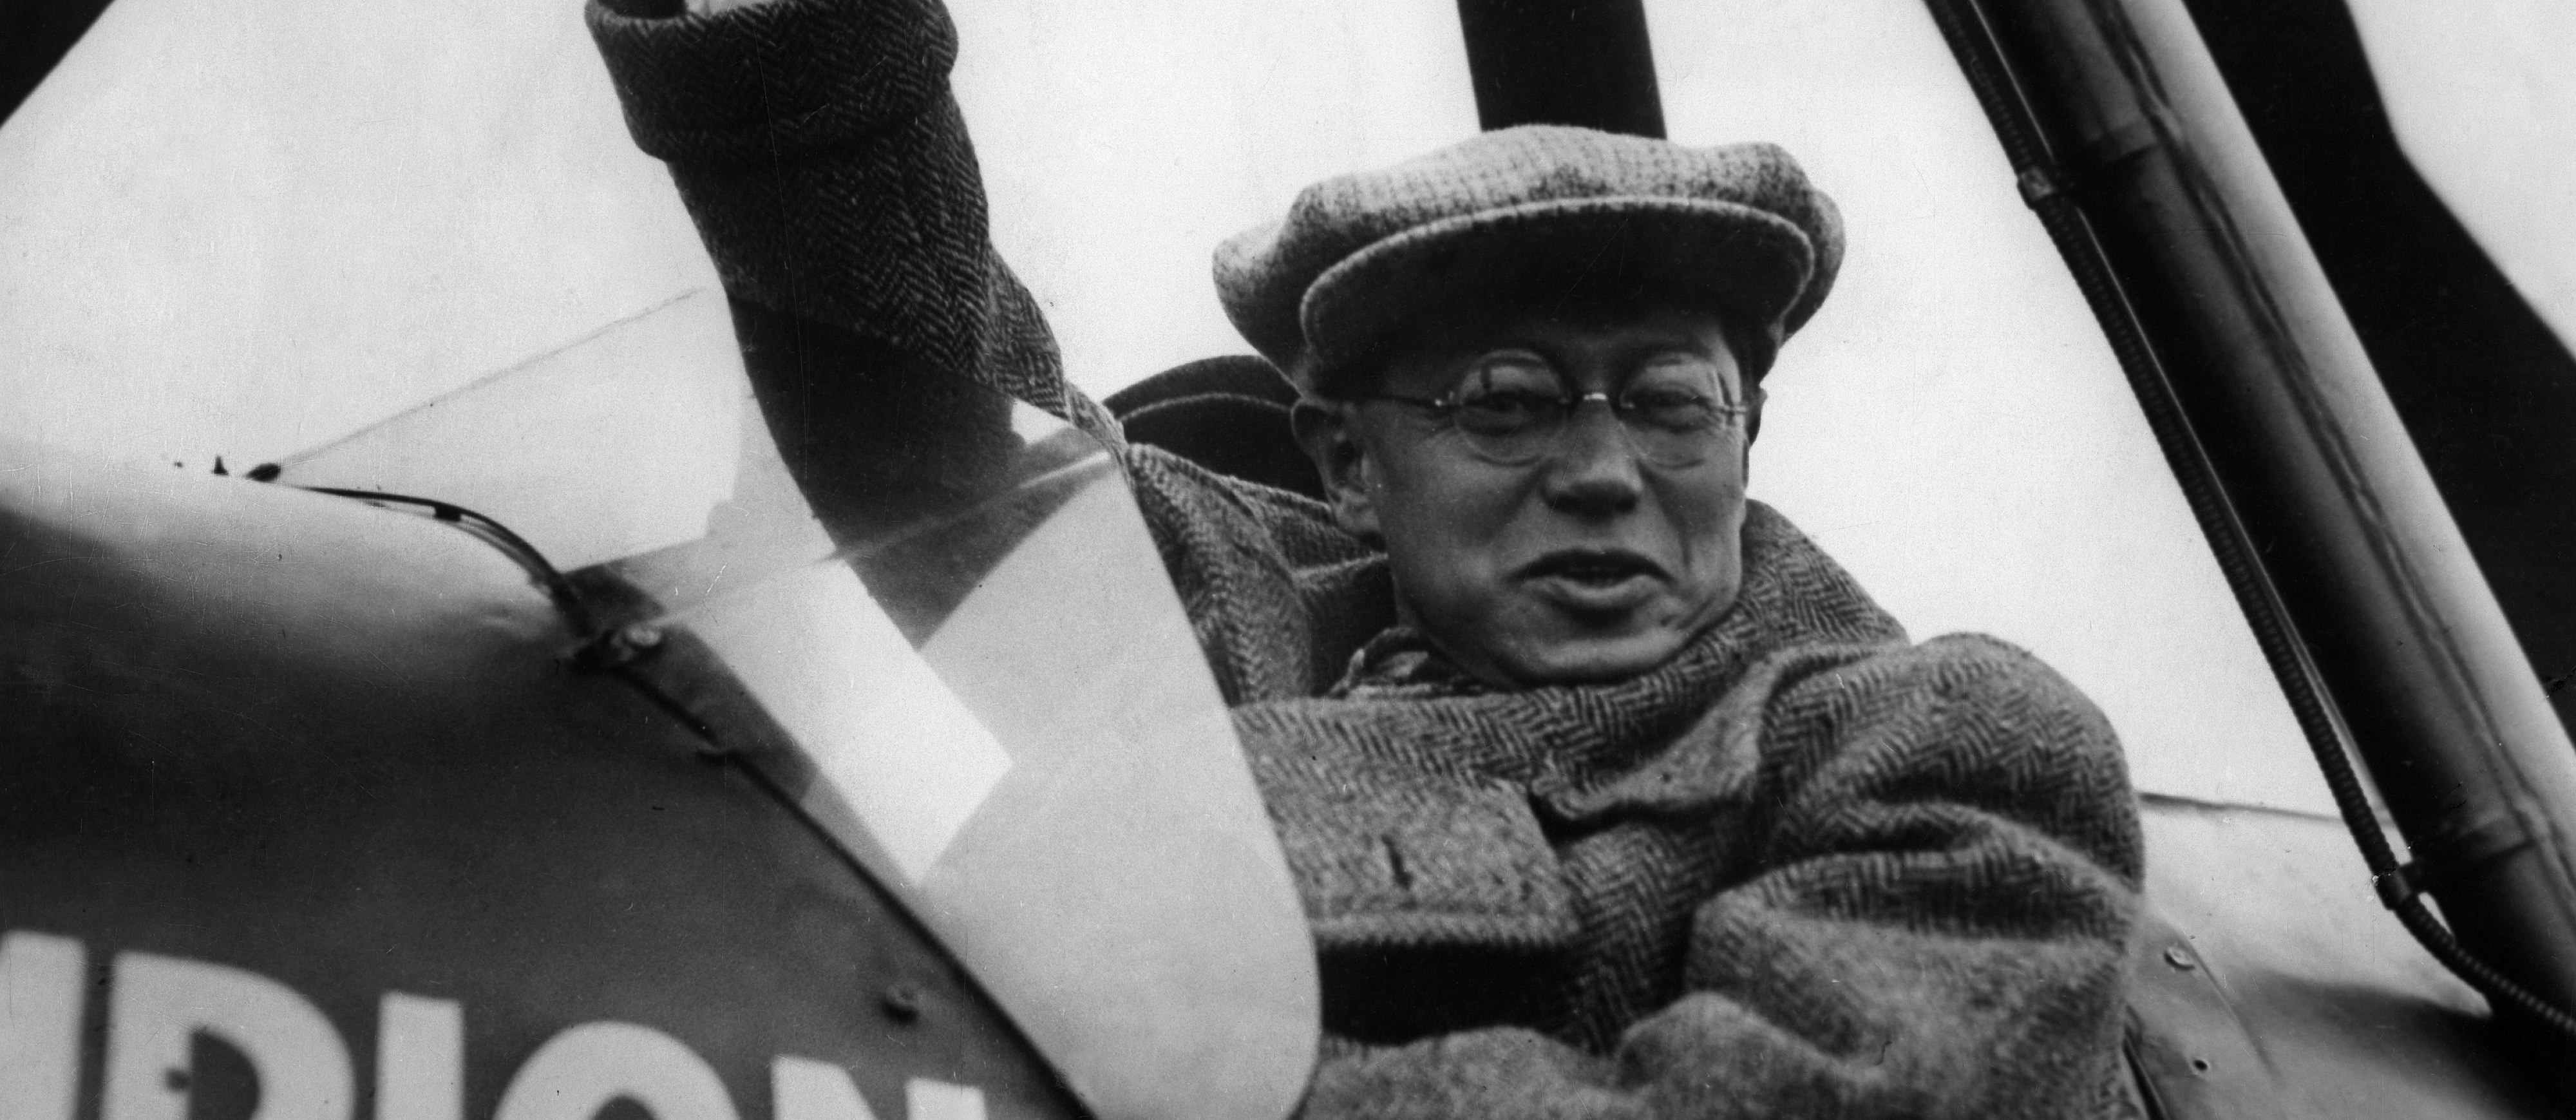 Der Schriftsteller Lion Feuchtwanger ("Jud Süß") in einem Flugzeug nach der erfolgreichen Flucht nach New York